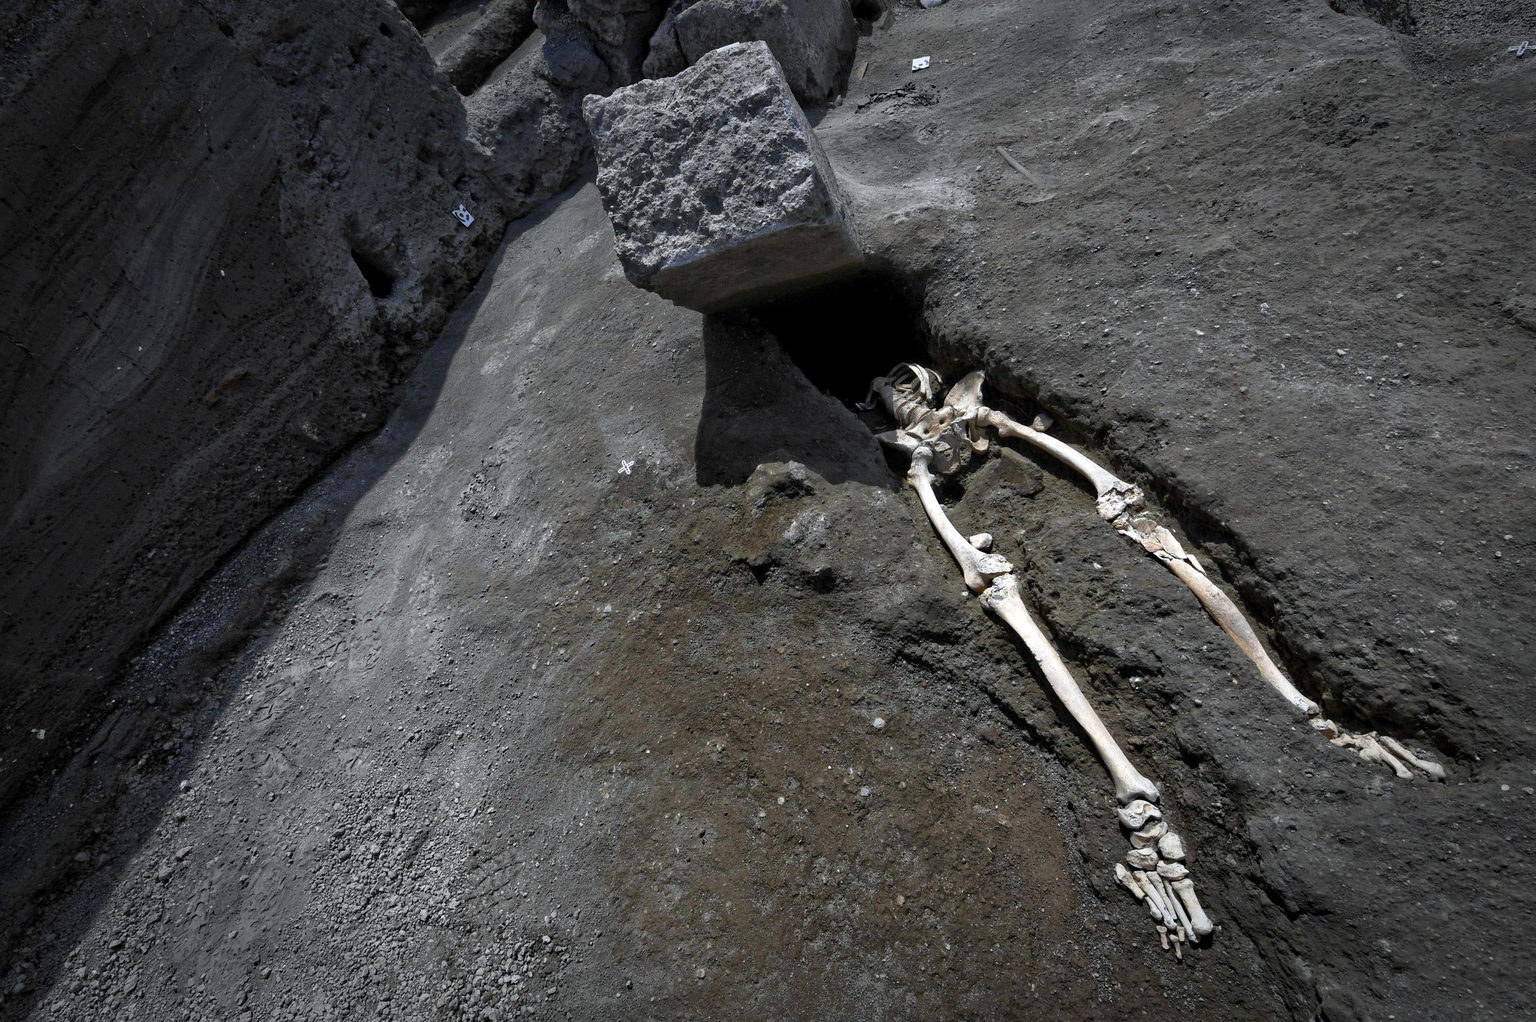 Pompeii man crushed rock